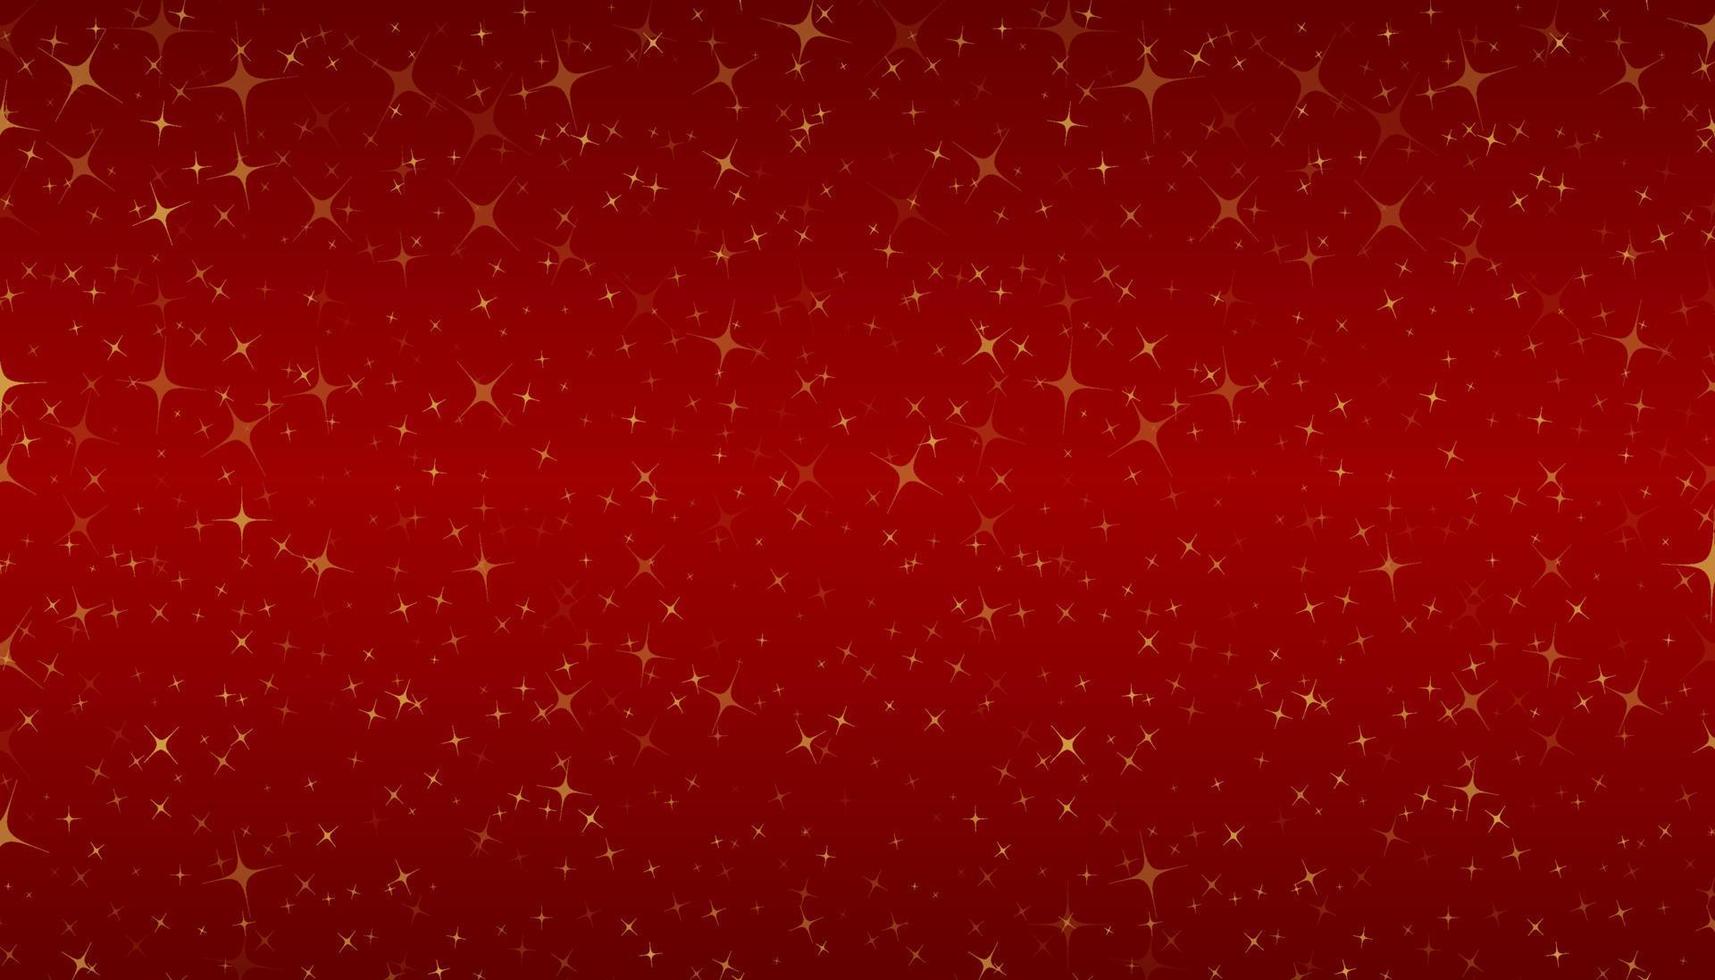 ouro aleatório cintilam estrelinhas no fundo gradiente vermelho. use para férias, festivos, elementos de decoração de eventos ou modelo. vetor